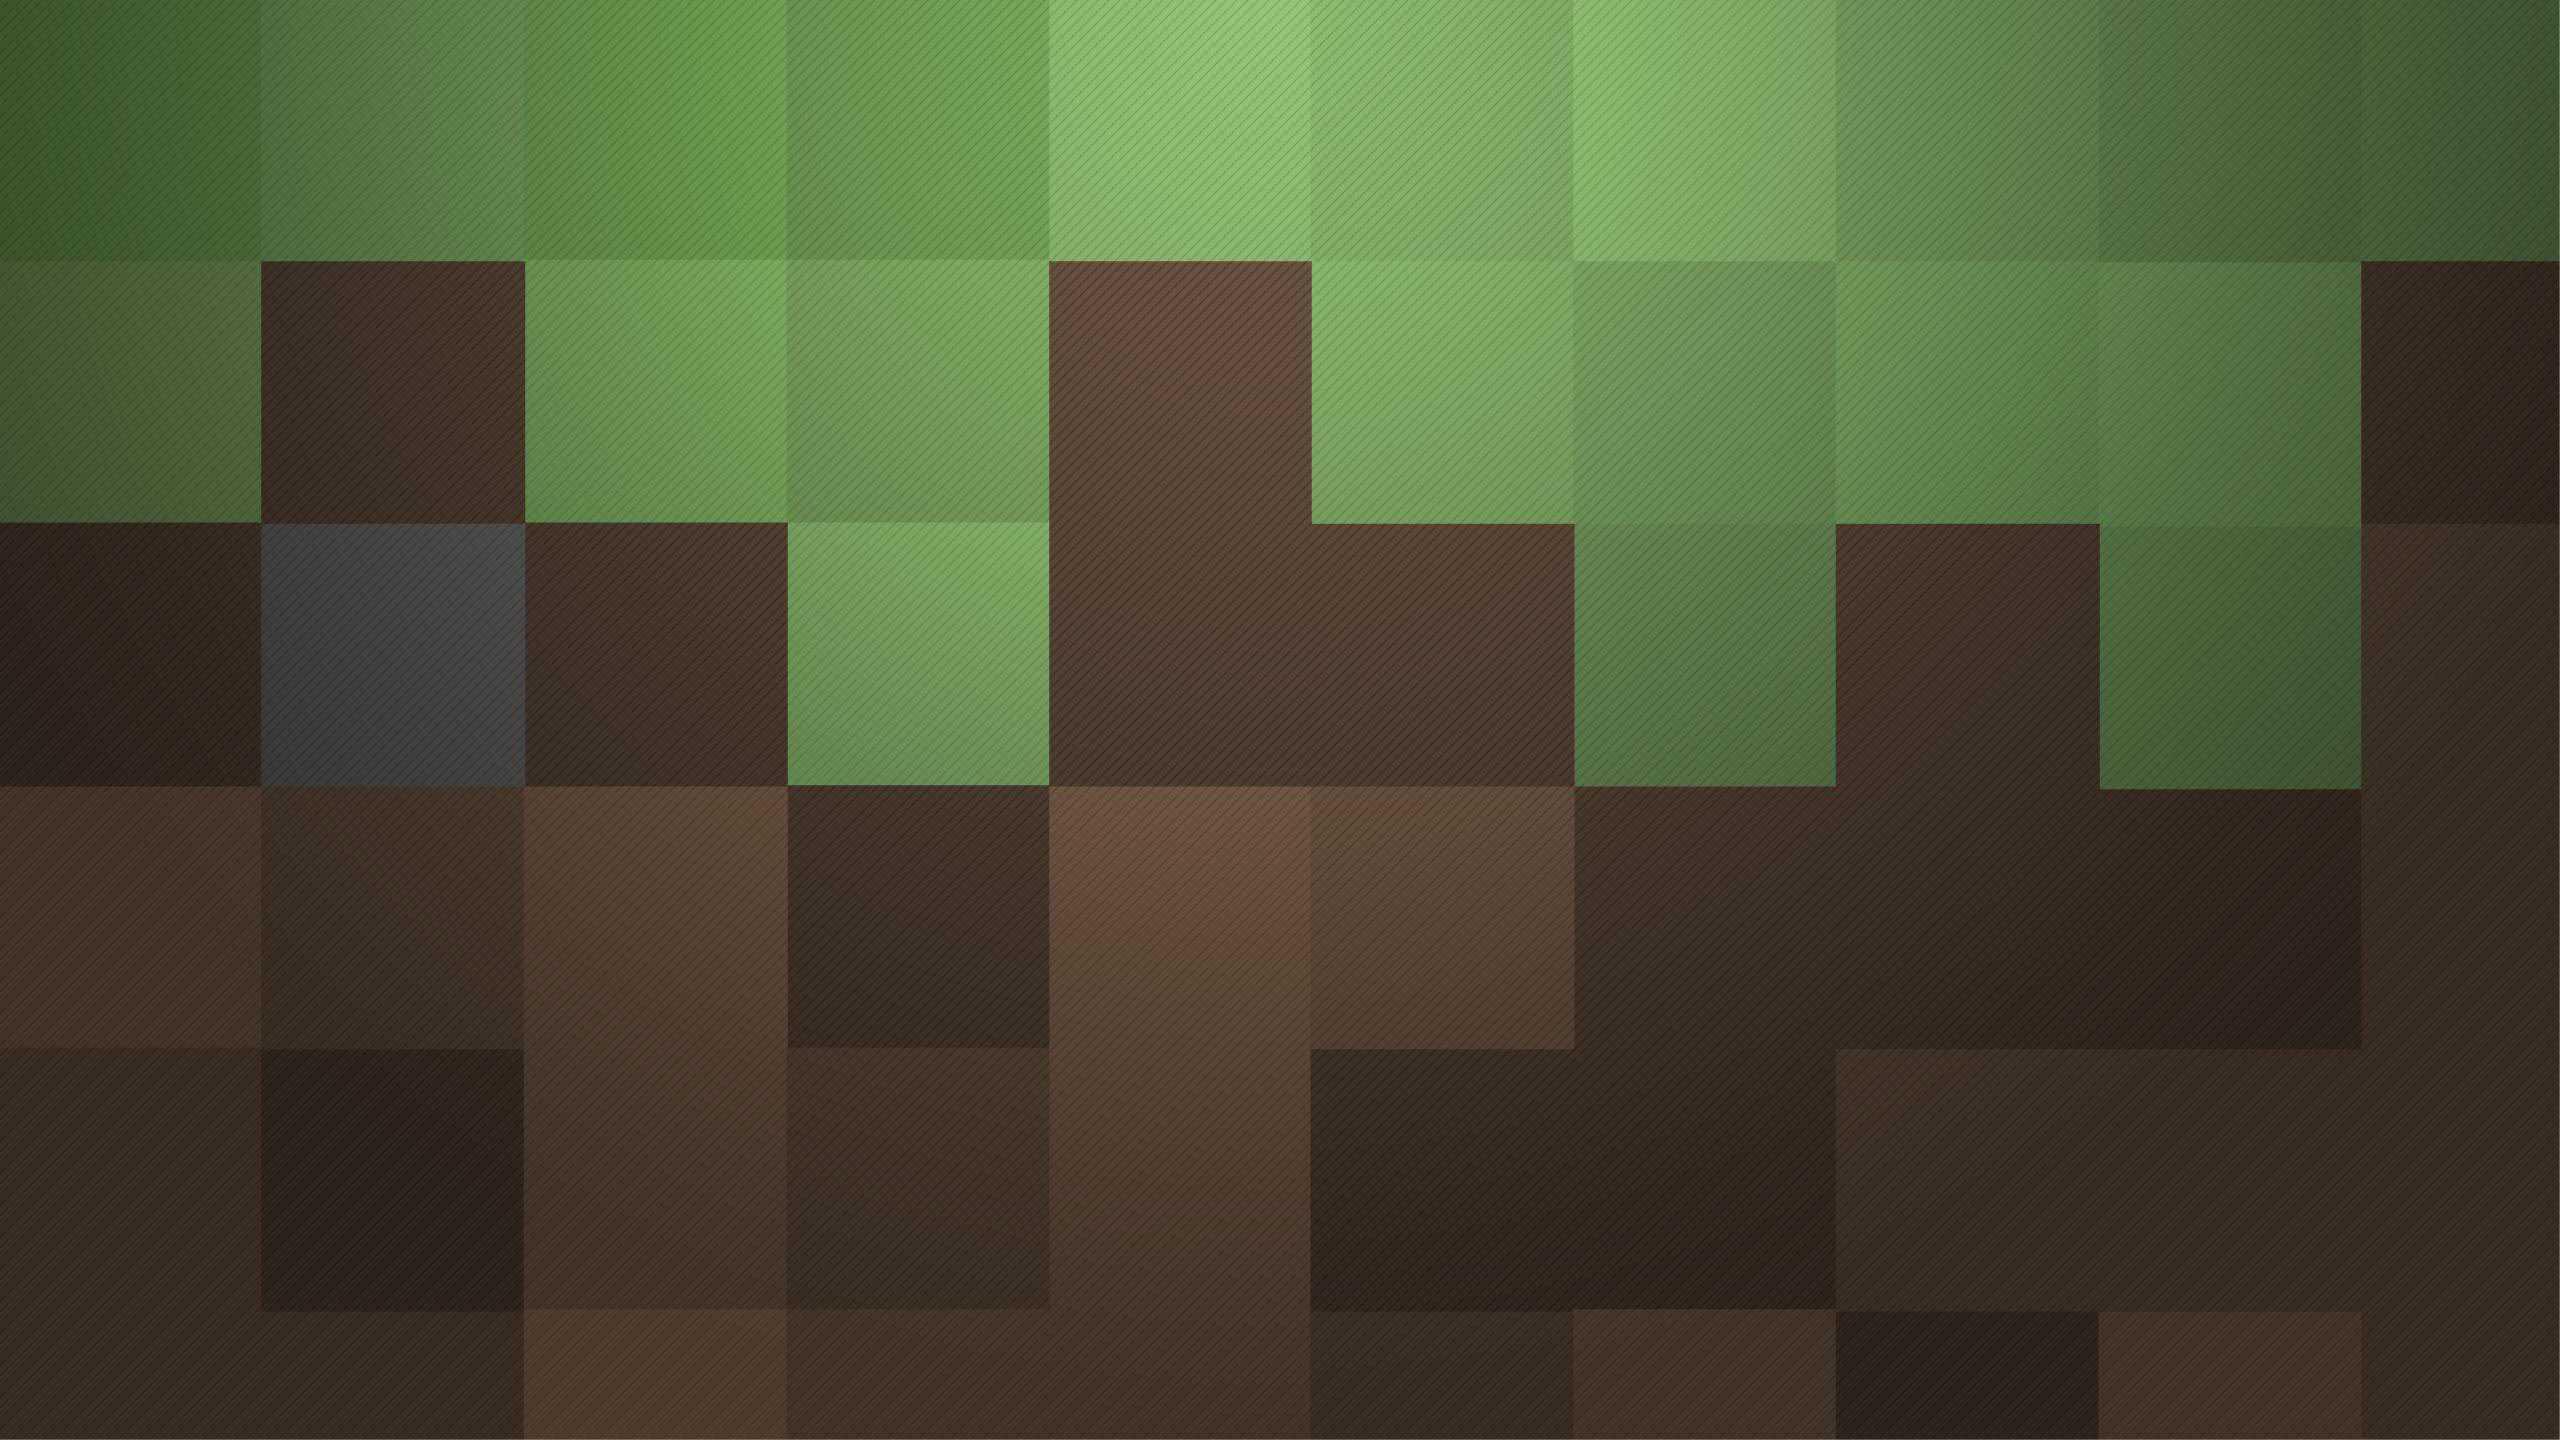 2560 x 1440 · jpeg - Minecraft Blocks WQHD 1440p Wallpaper | Pixelz